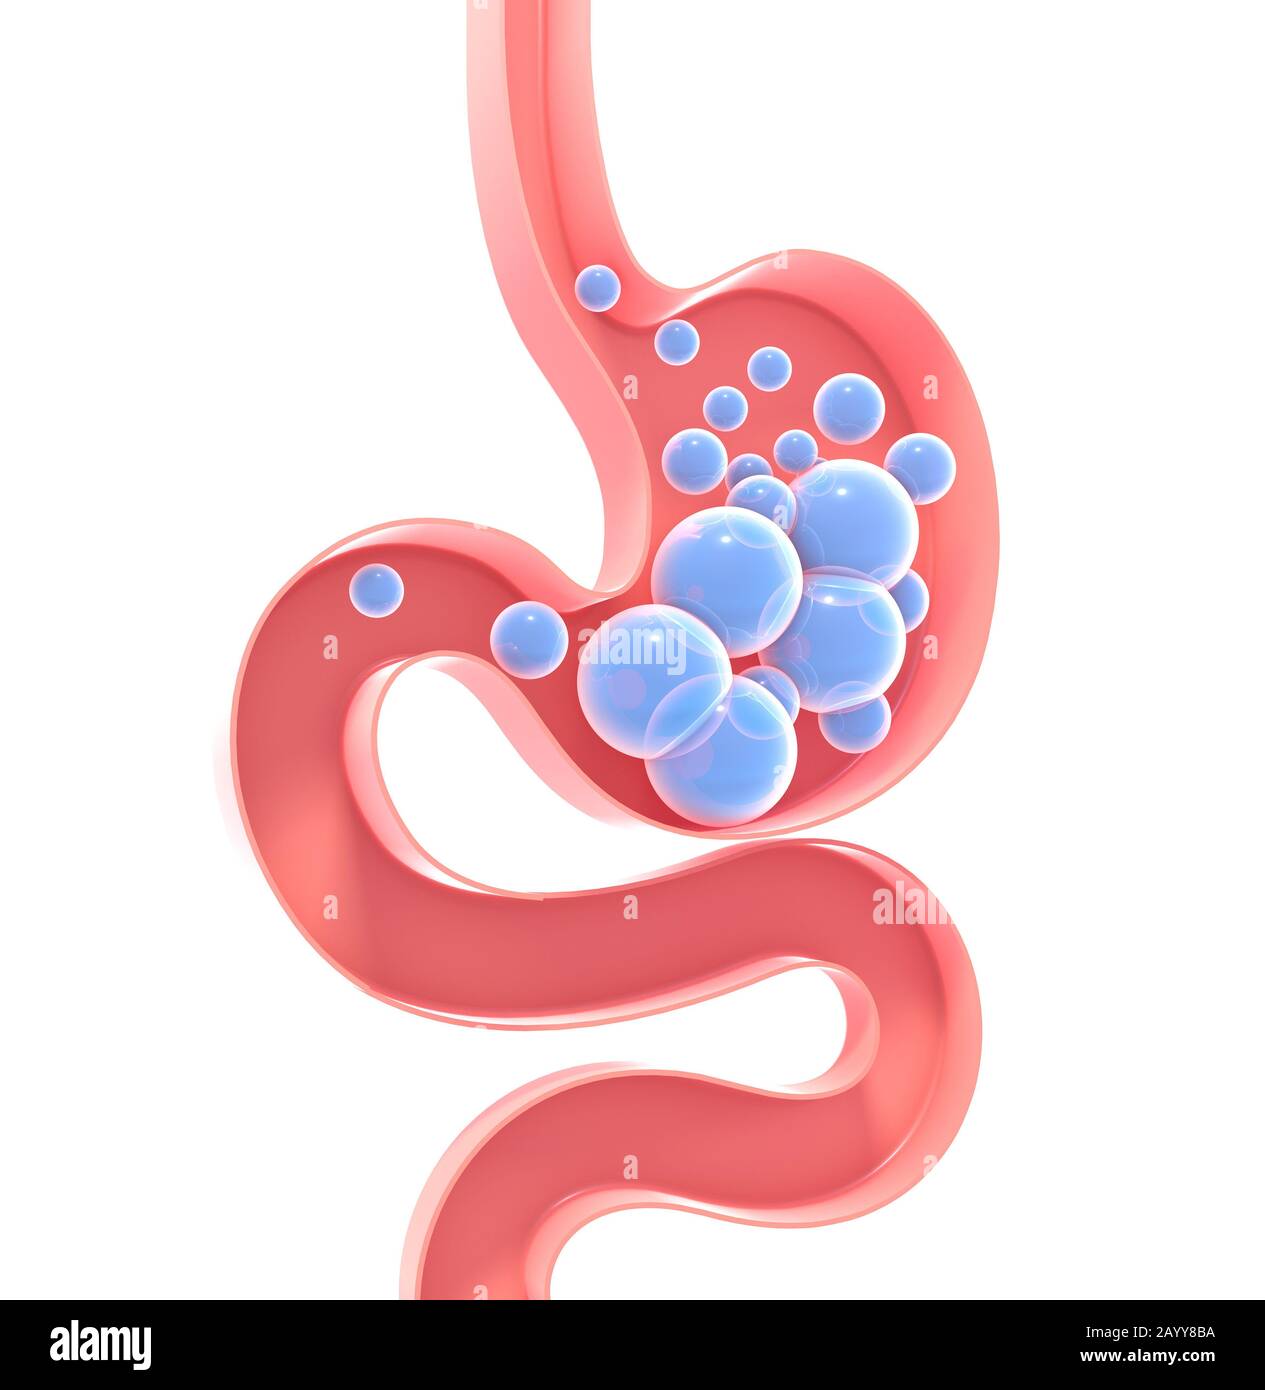 3D illustrazione dello schema interno dello stomaco umano con gas. Figura piatta vuota, silhouette isolata su sfondo bianco con colori vivaci Foto Stock